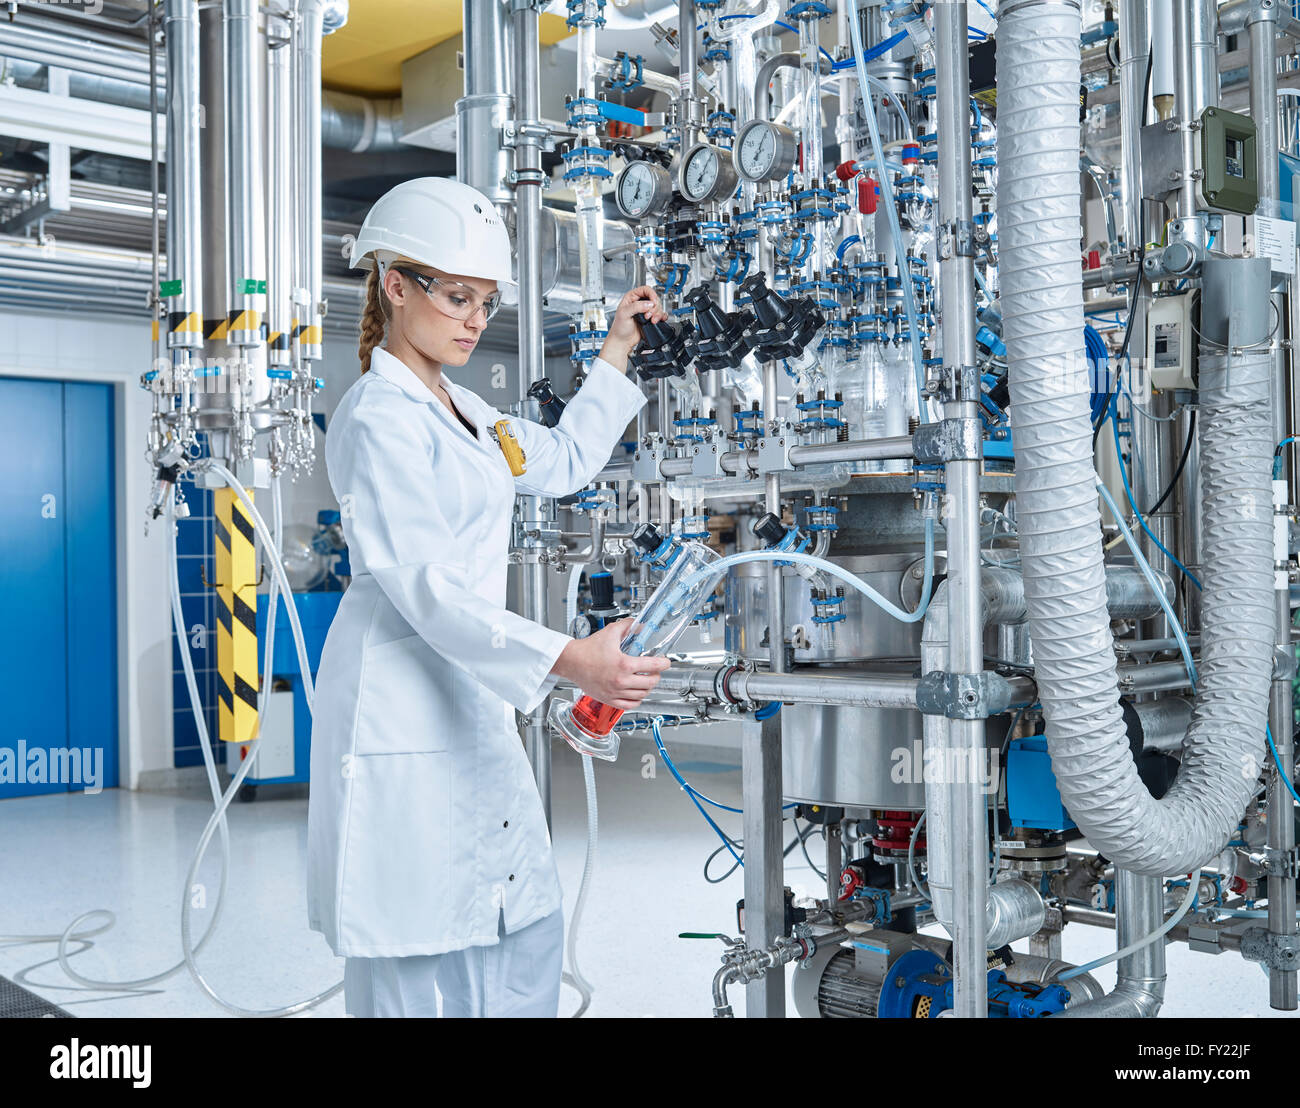 Femmina assistente di laboratorio, 20-25 anni, farmacia il riempimento di un recipiente con un liquido rosso in un laboratorio, Wattens, Innsbruck Land Tirolo Foto Stock